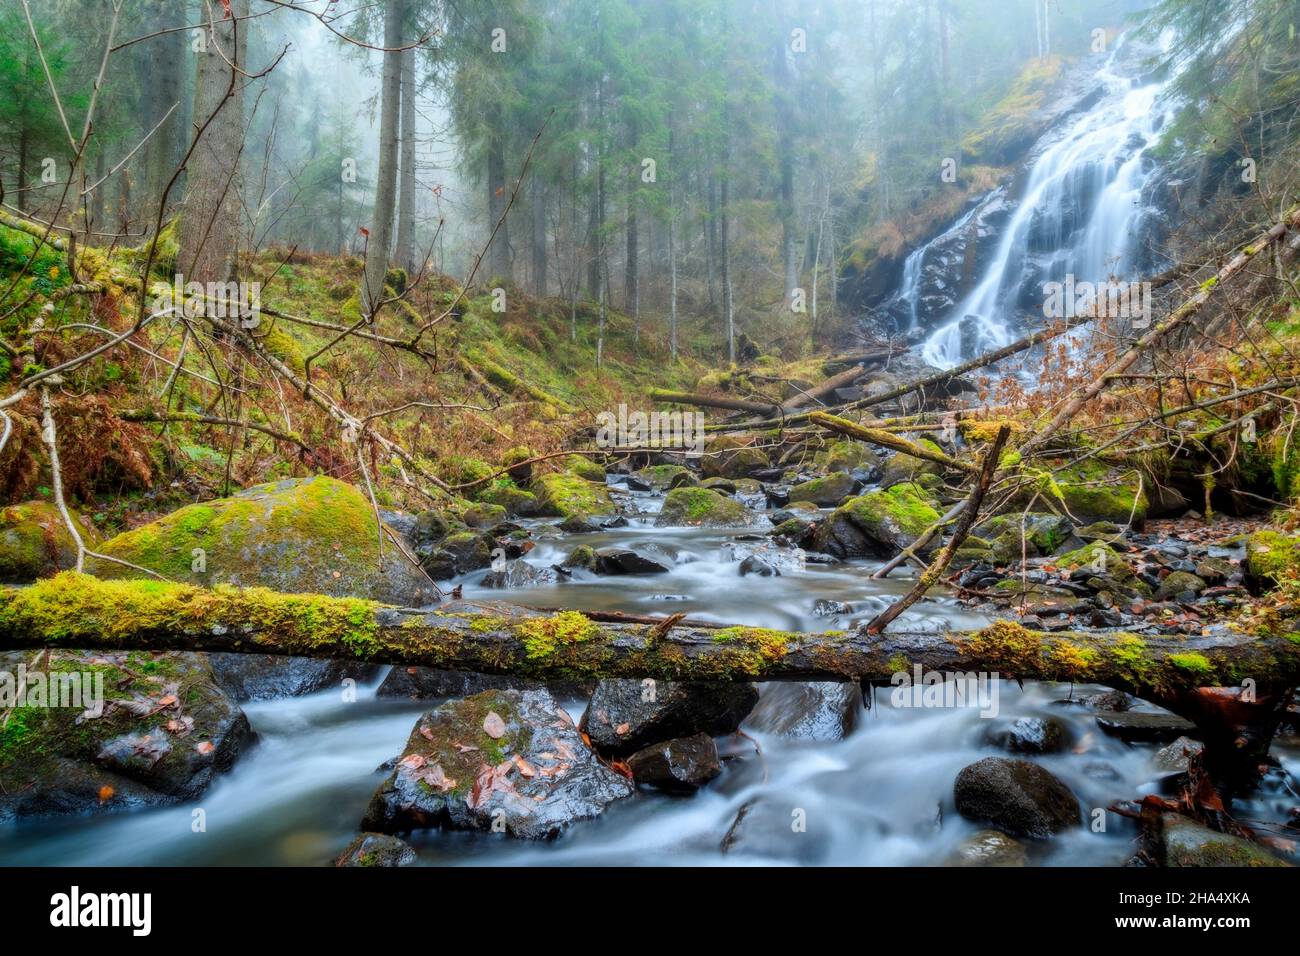 alberi cadenti con una cascata in una foresta, paesaggio autunnale Foto Stock